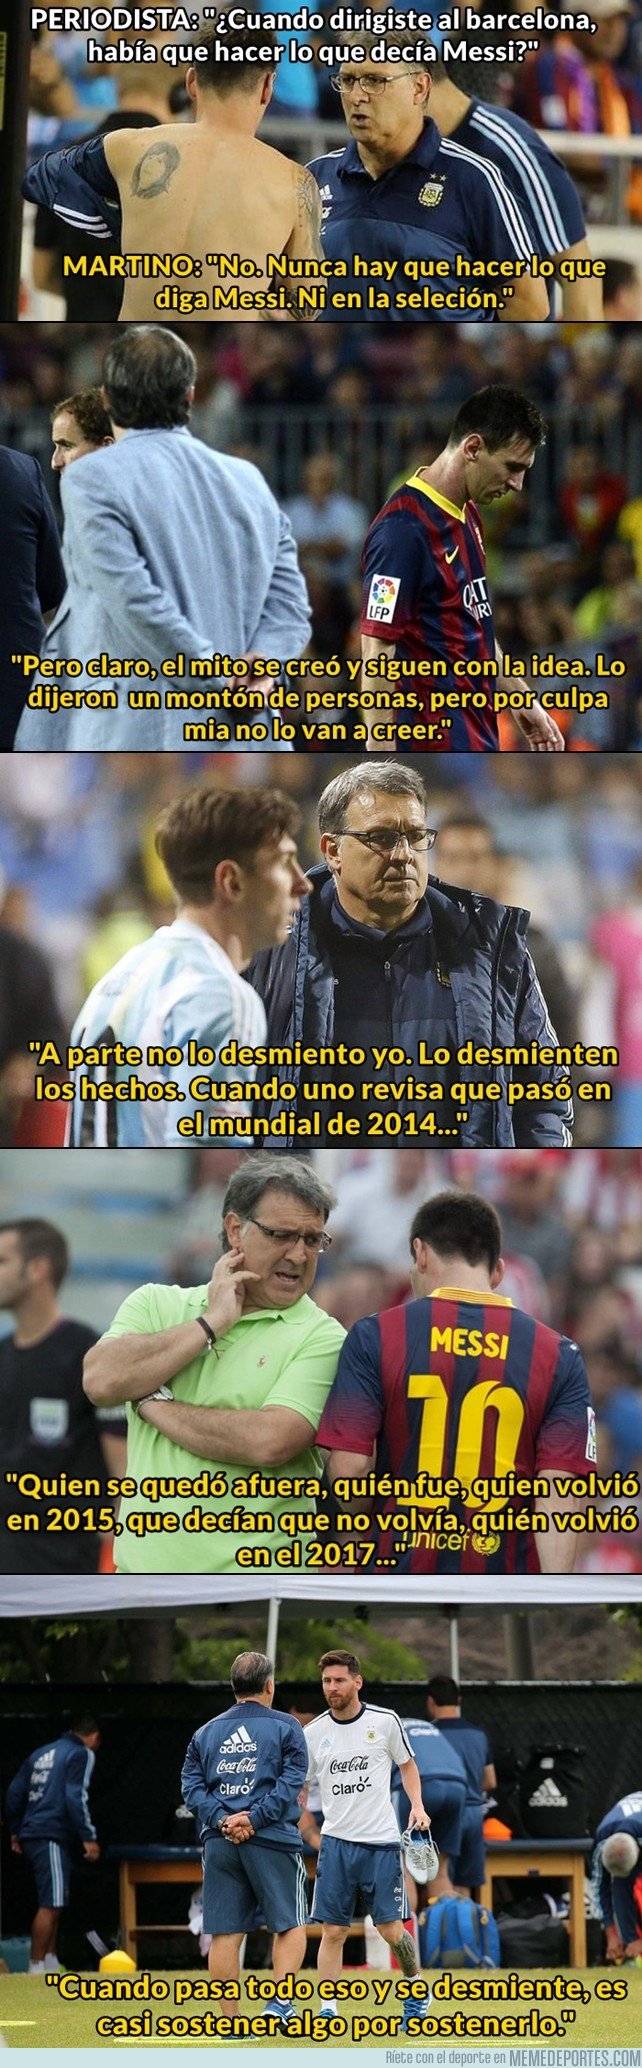 1054158 - Martino desmiente uno de los mitos con los que más atacaban a Messi. La prensa argentina debería tomar nota de esto